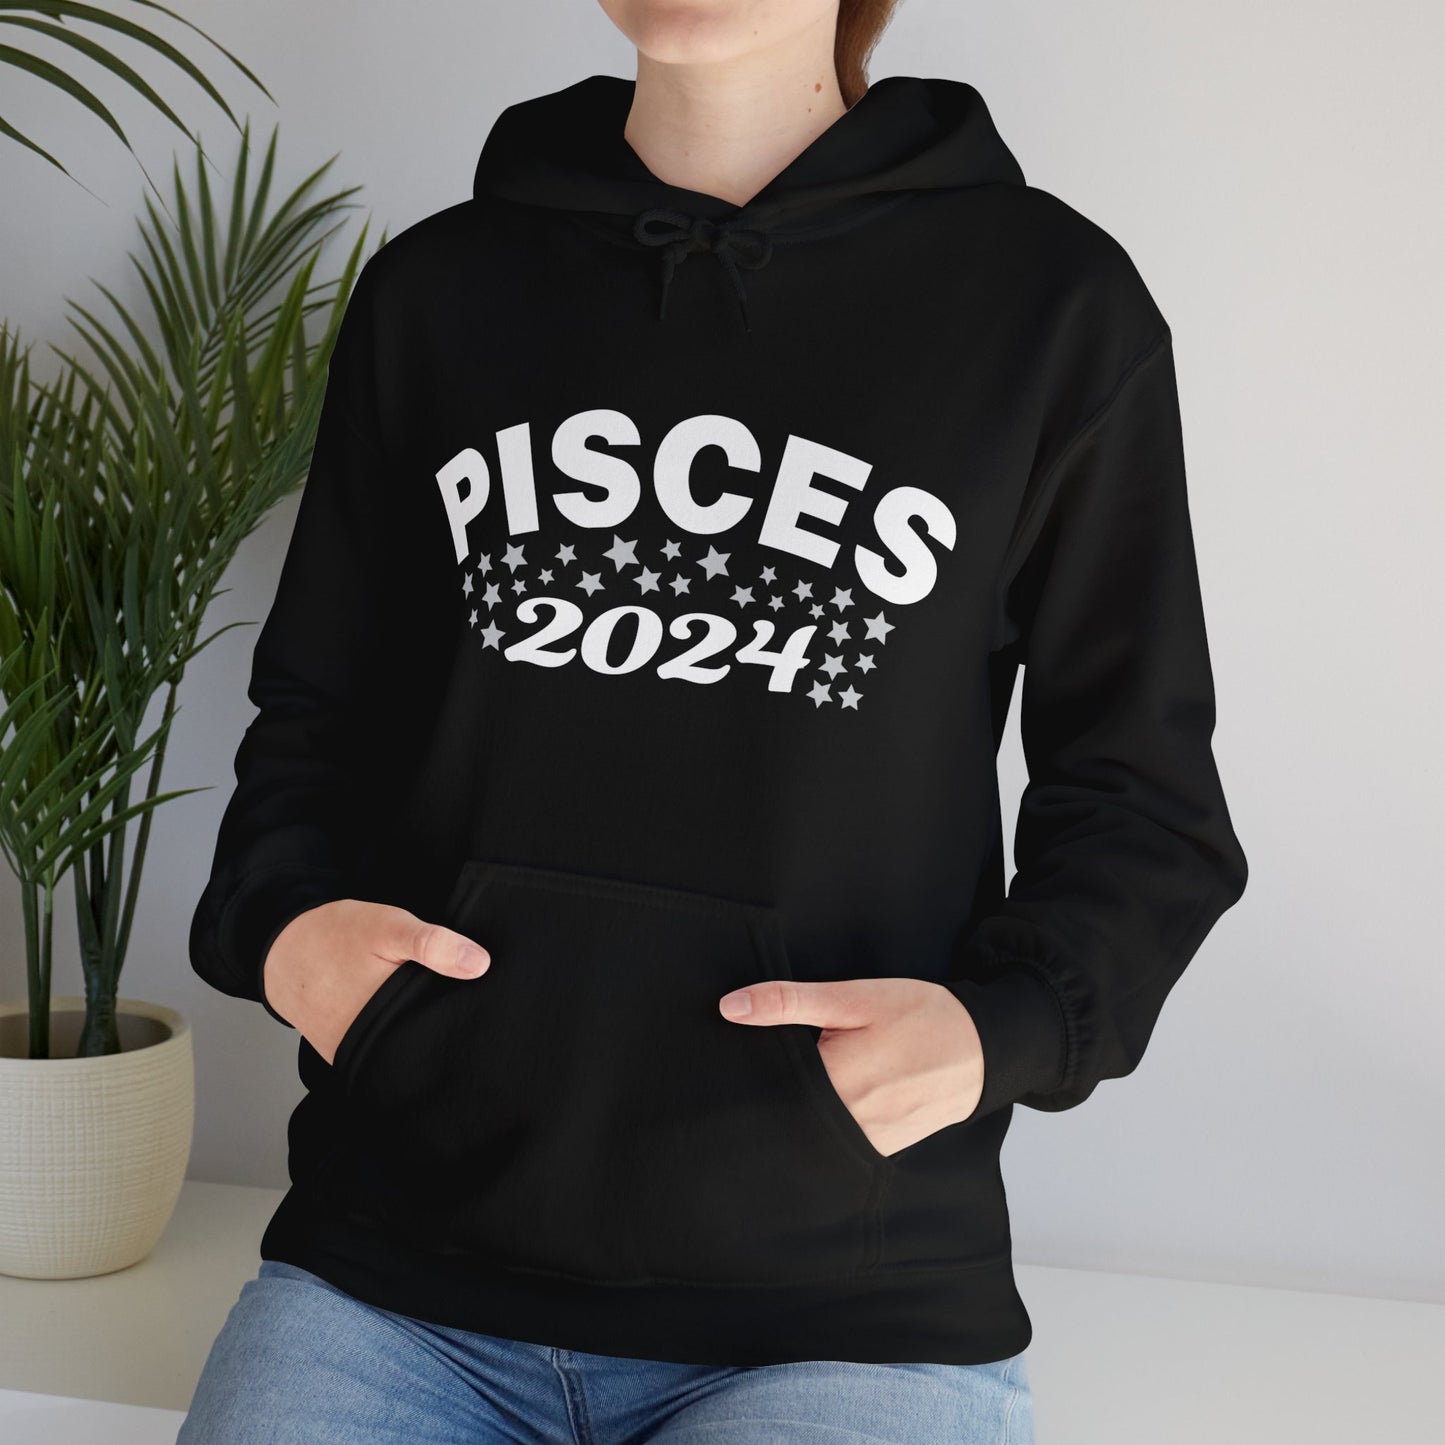 Pisces Hooded Sweatshirt 2024